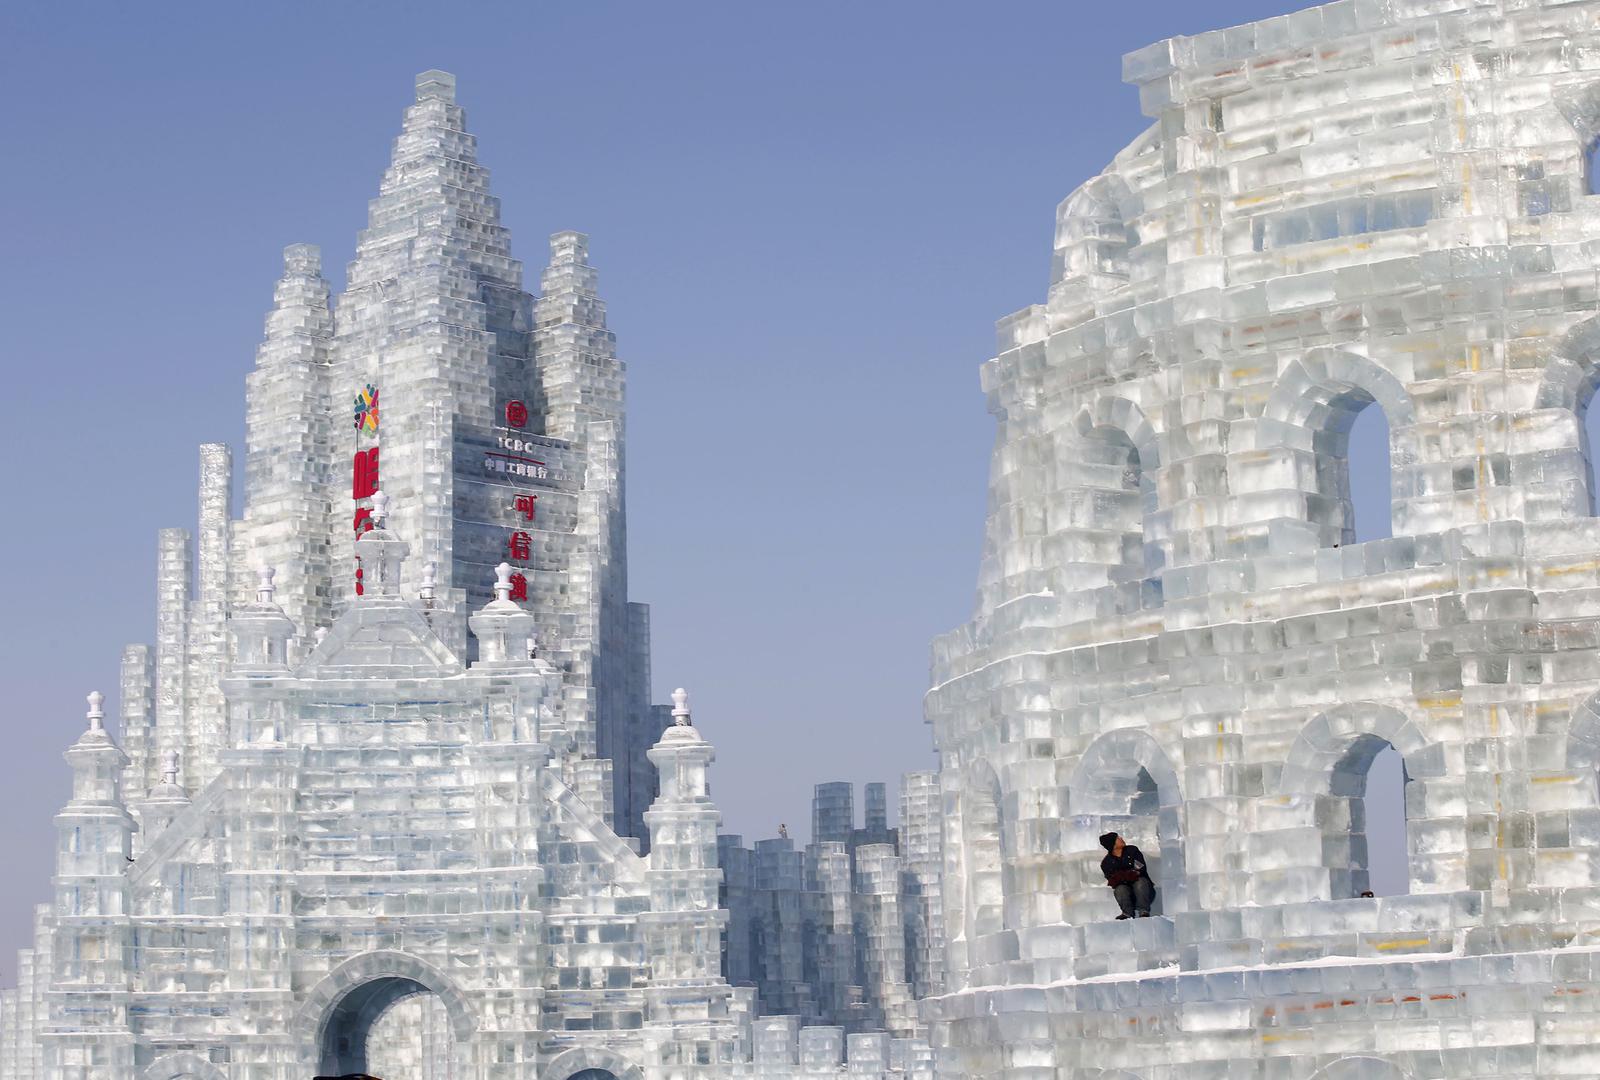 Как называется большой ледяной дворец снежной королевы. Харбин дворец льда. Харбин ледяной город. Ледяной дворец в Харбине. Харбинский фестиваль ледяных скульптур.